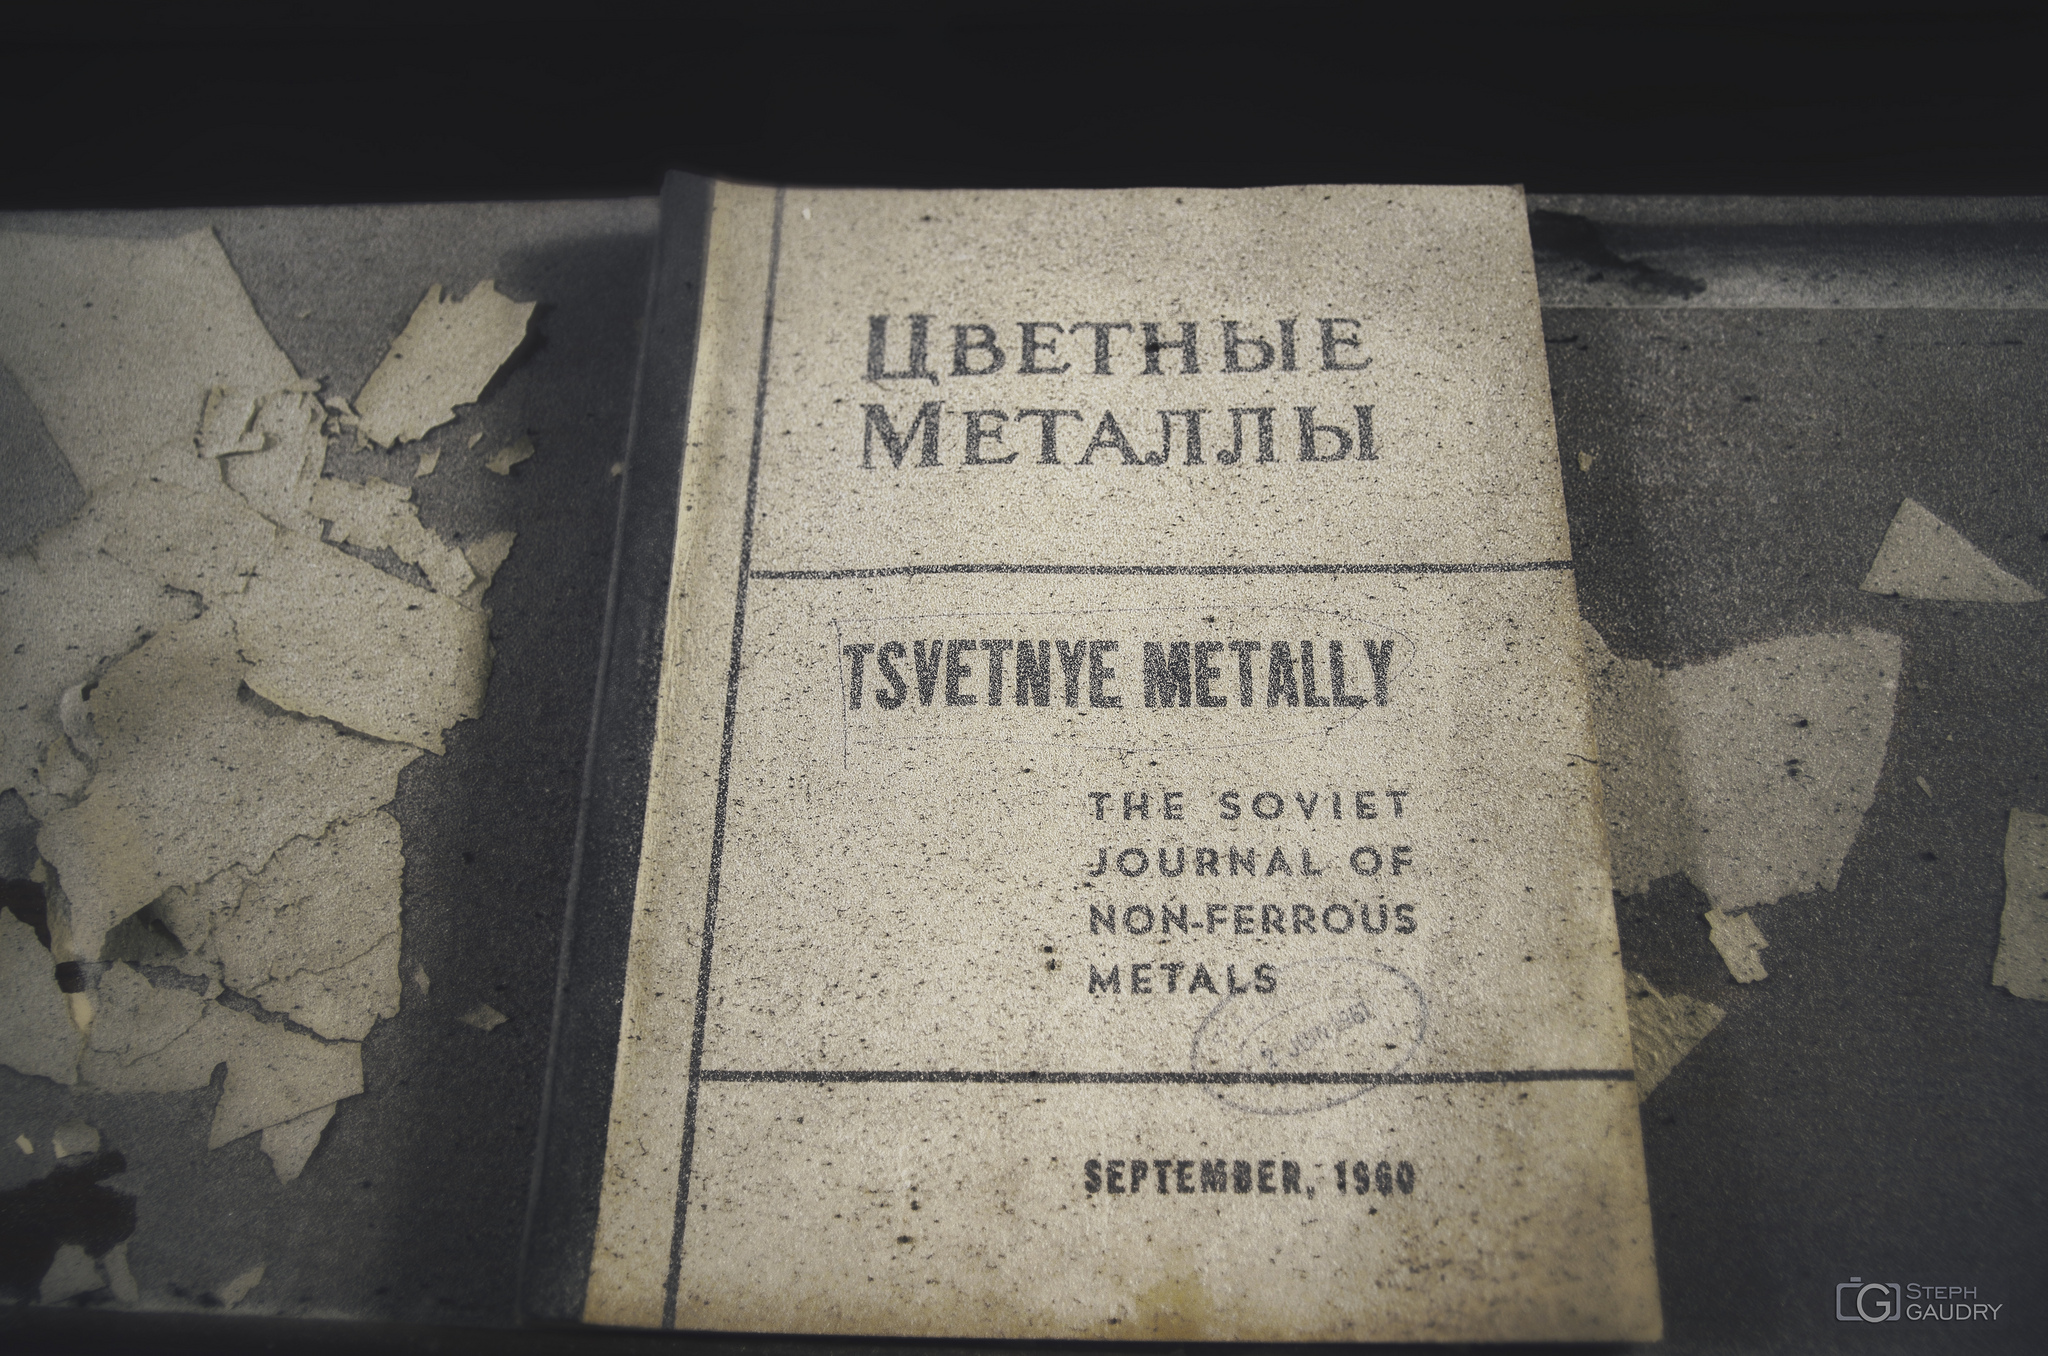 Institut de chimie et de métallurgie / Советская металлическая промышленность